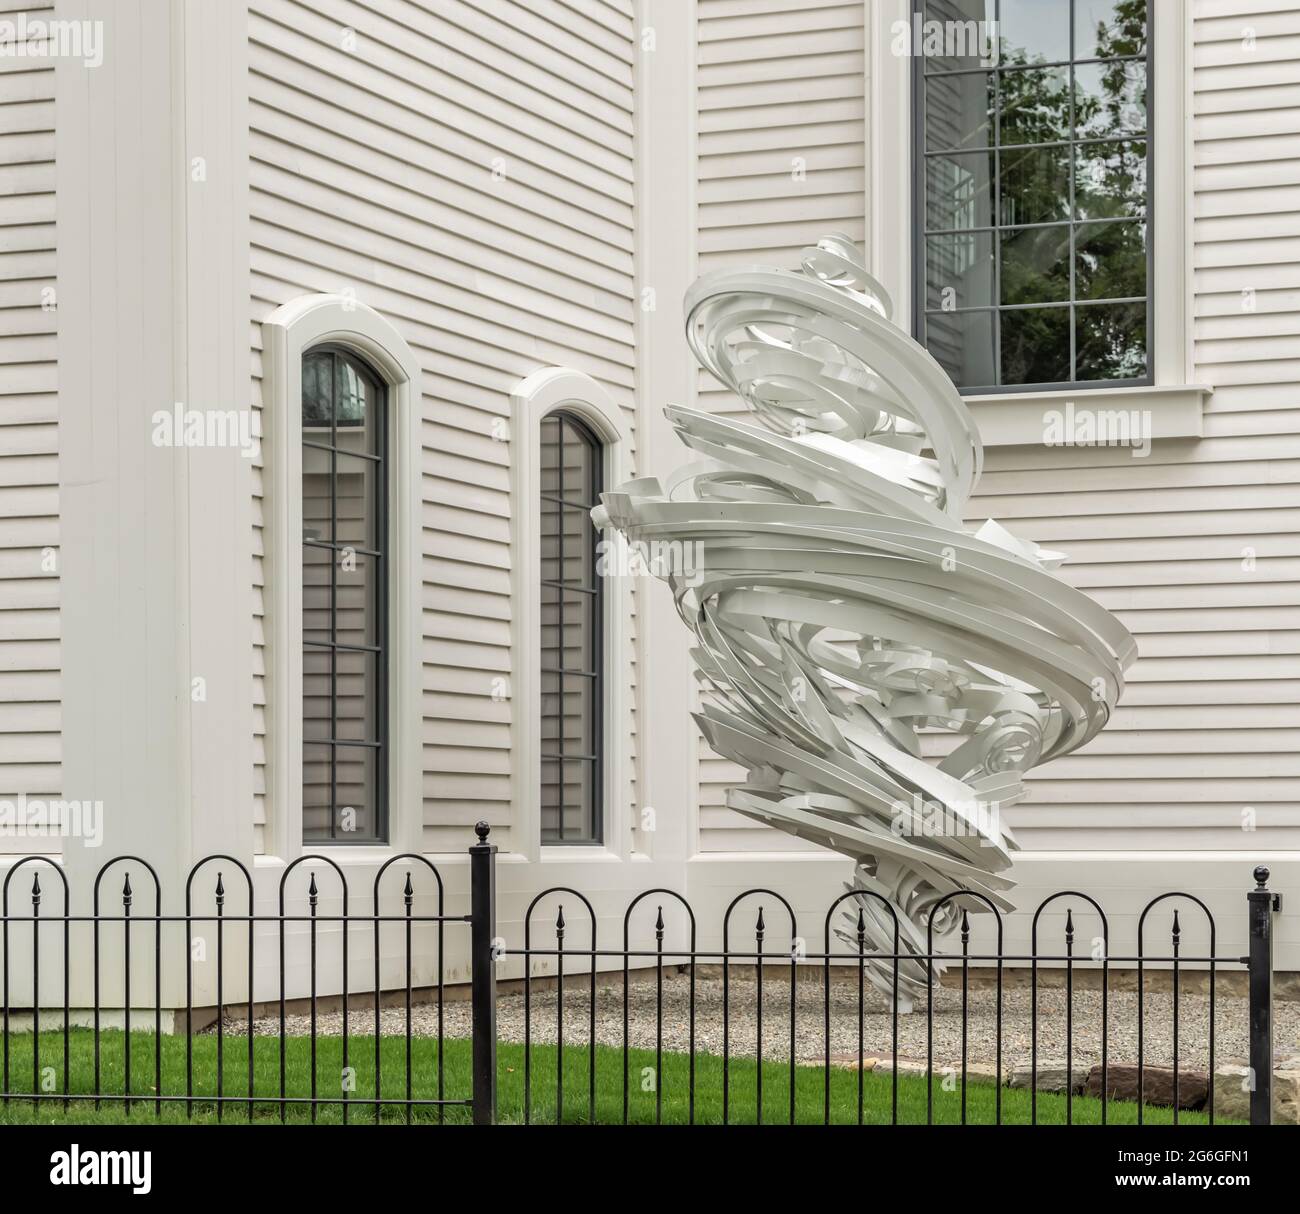 La sculpture extérieure d'Alice Aycock, Twister Grande à l'église de Sag Harbor, NY Banque D'Images